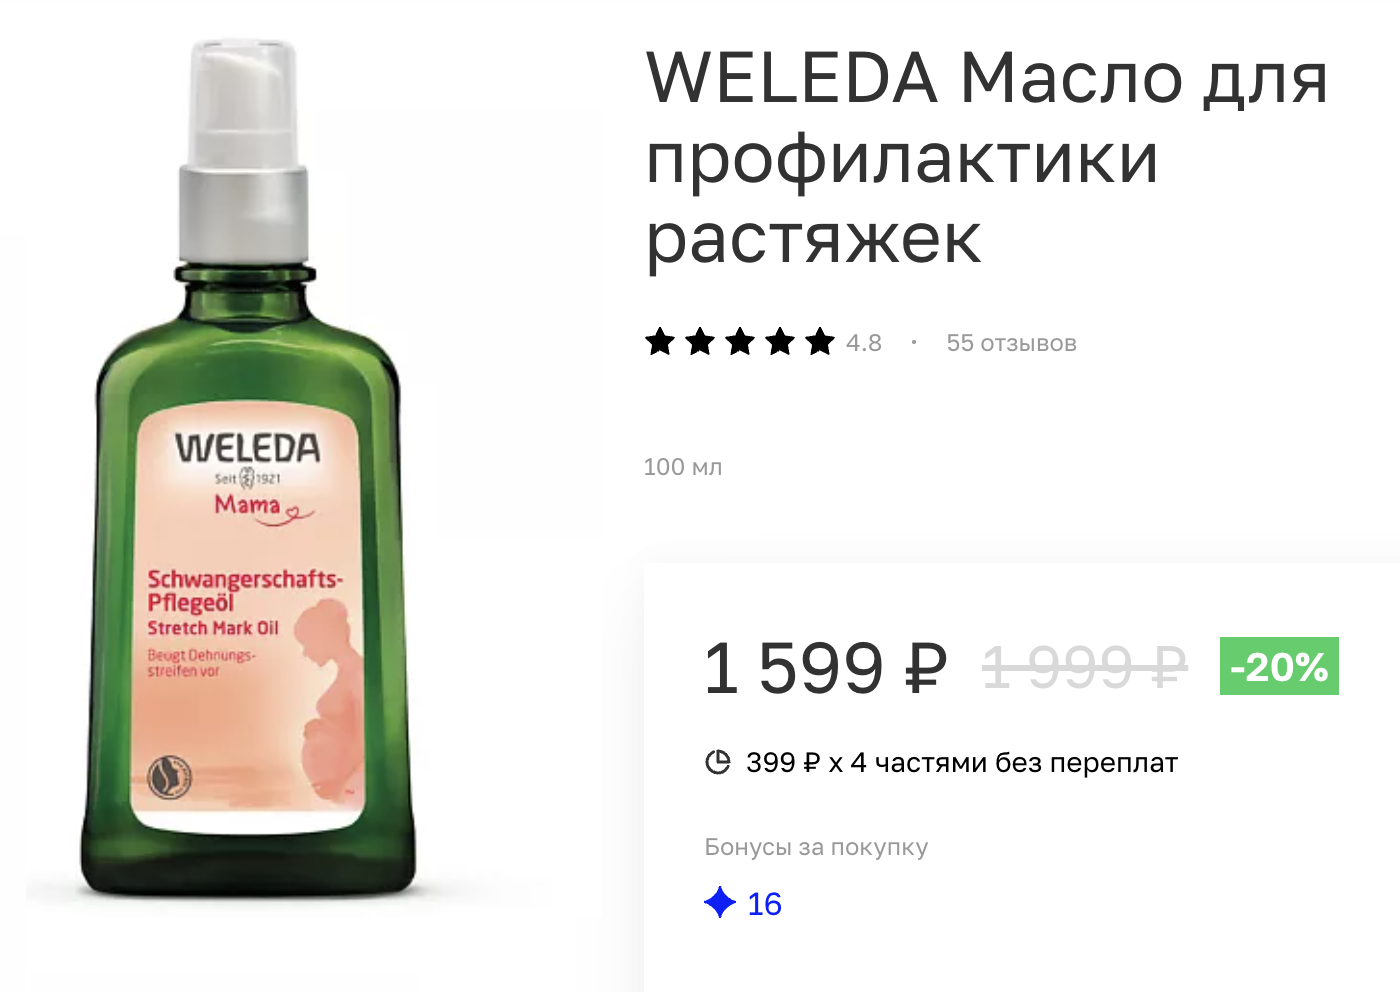 Масло для профилактики растяжек я покупала на маркетплейсах, где оно было дешевле. Источник: letu.ru